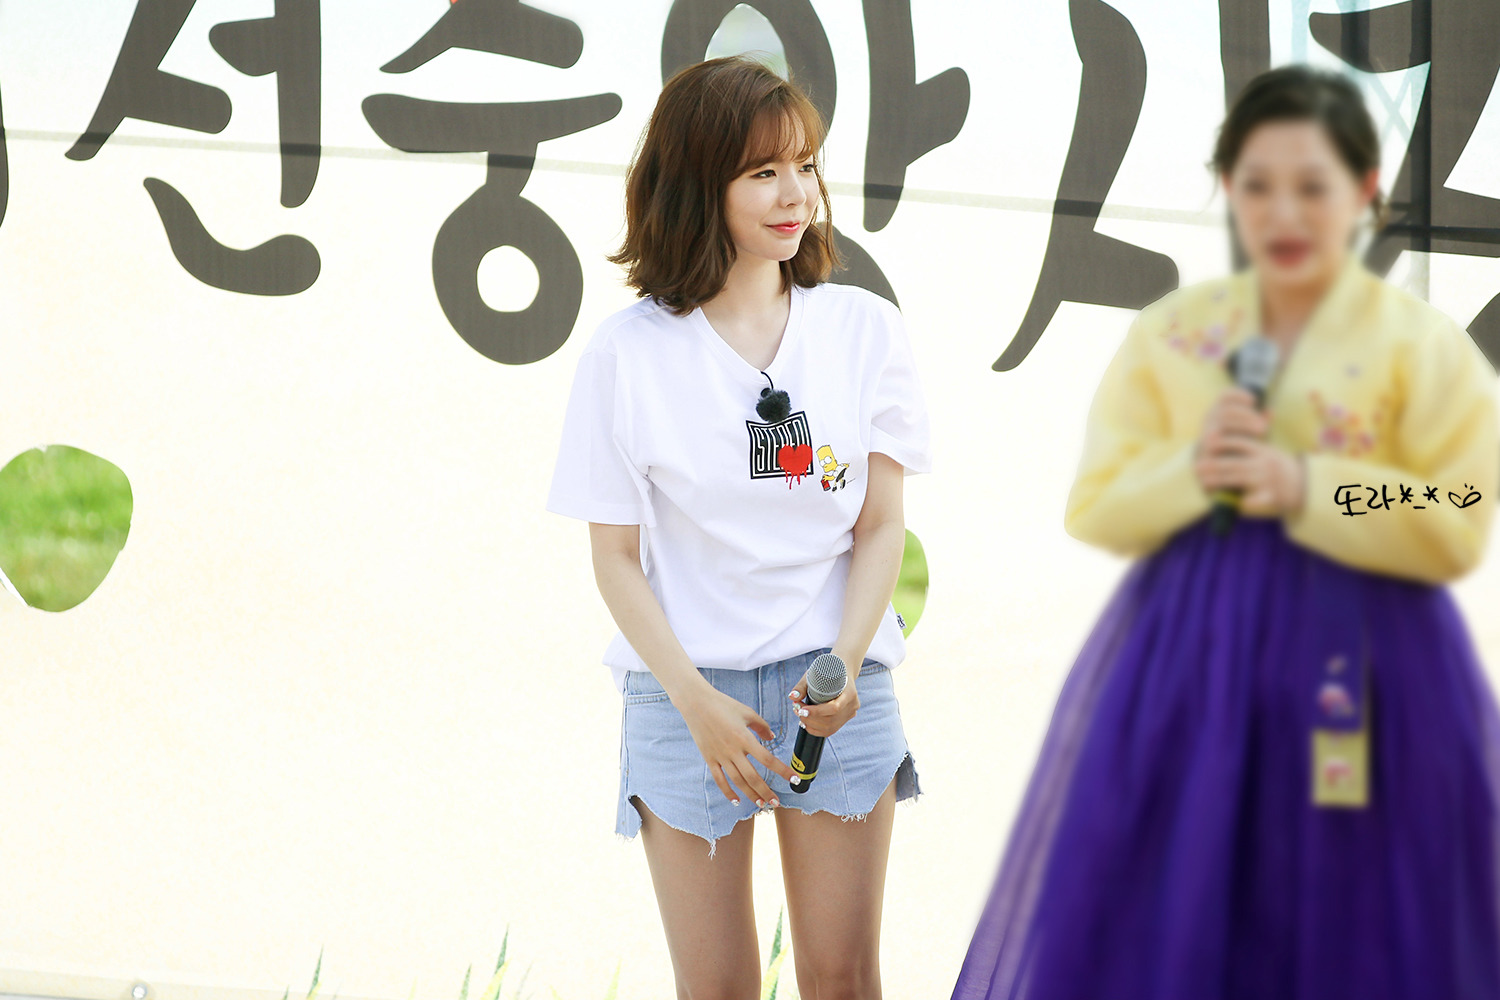 [PIC][16-05-2016]Sunny ghi hình cho chương trình "재래시장 살리자" của kênh JTBC tại Busan vào hôm nay - Page 12 25081F425950EEB72E0BCE